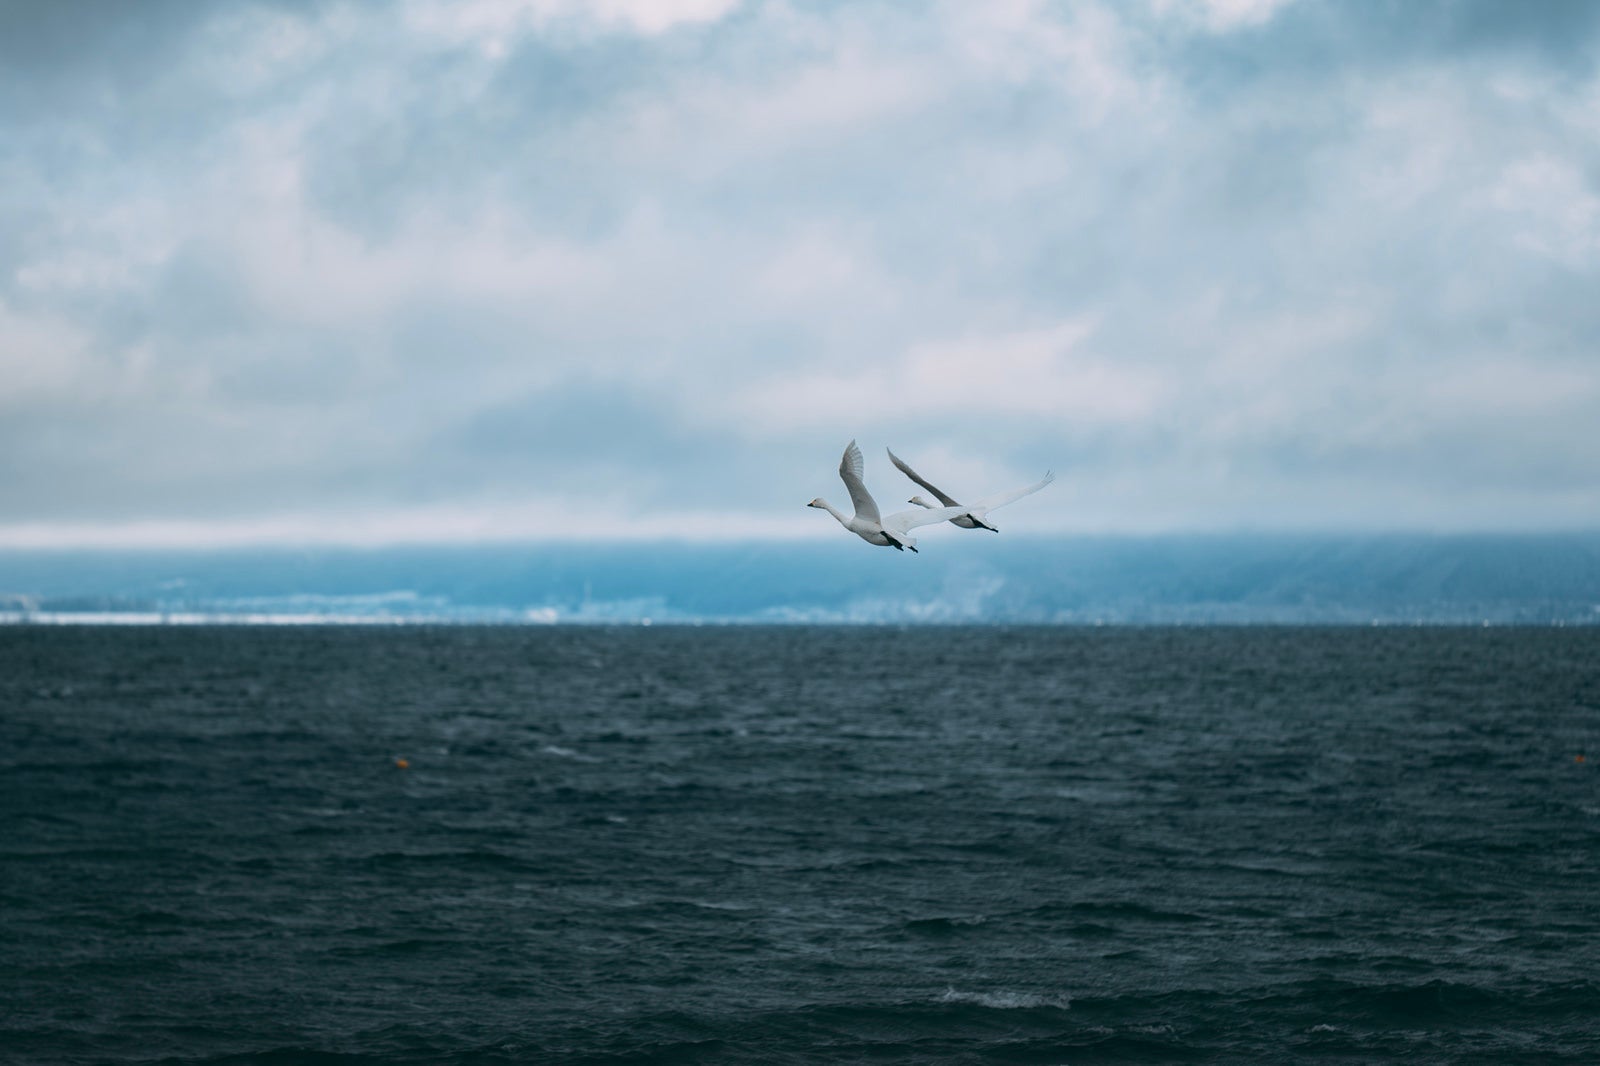 「猪苗代湖の白鳥飛翔」の写真